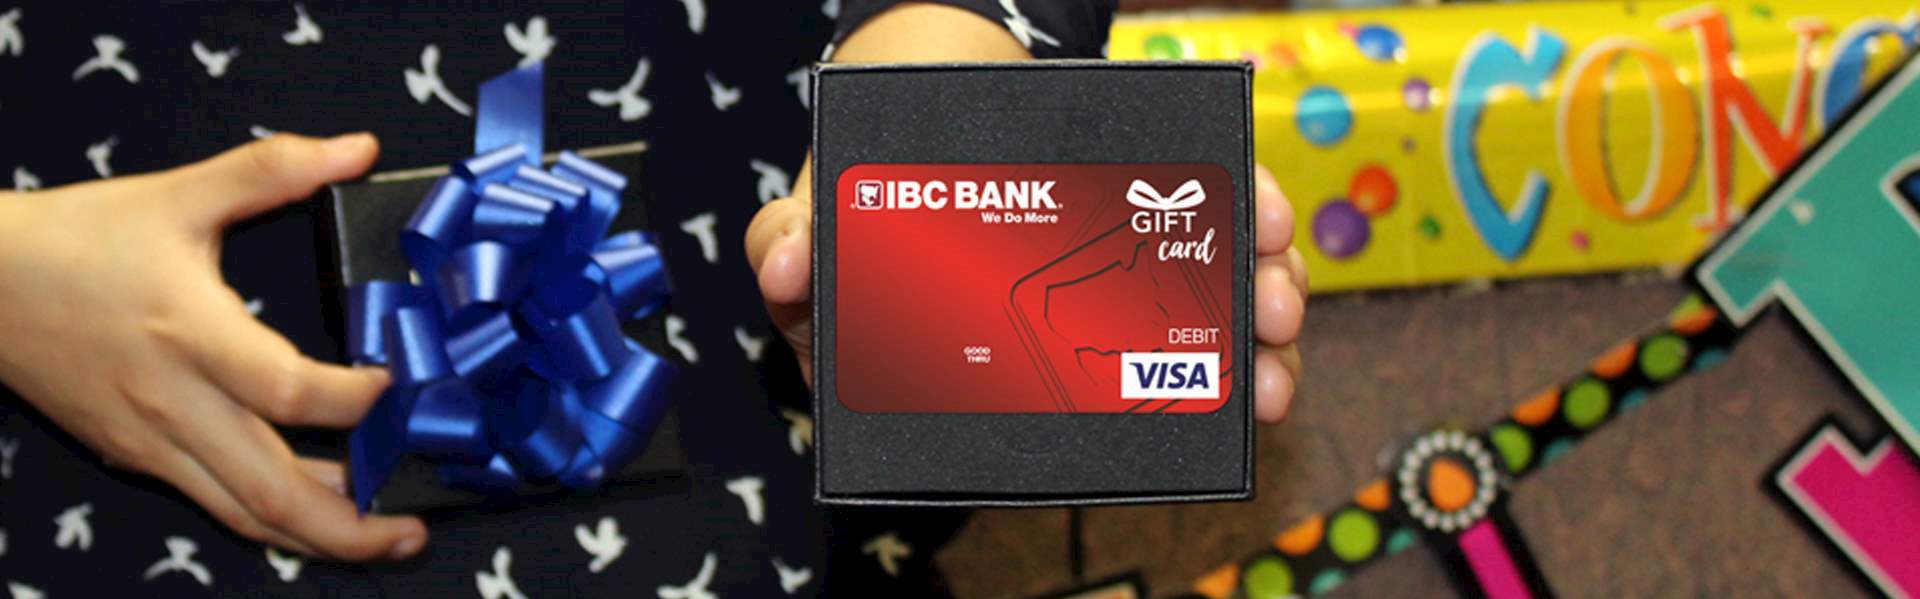 Tarjeta de Regalo Visa IBC del Banco IBC